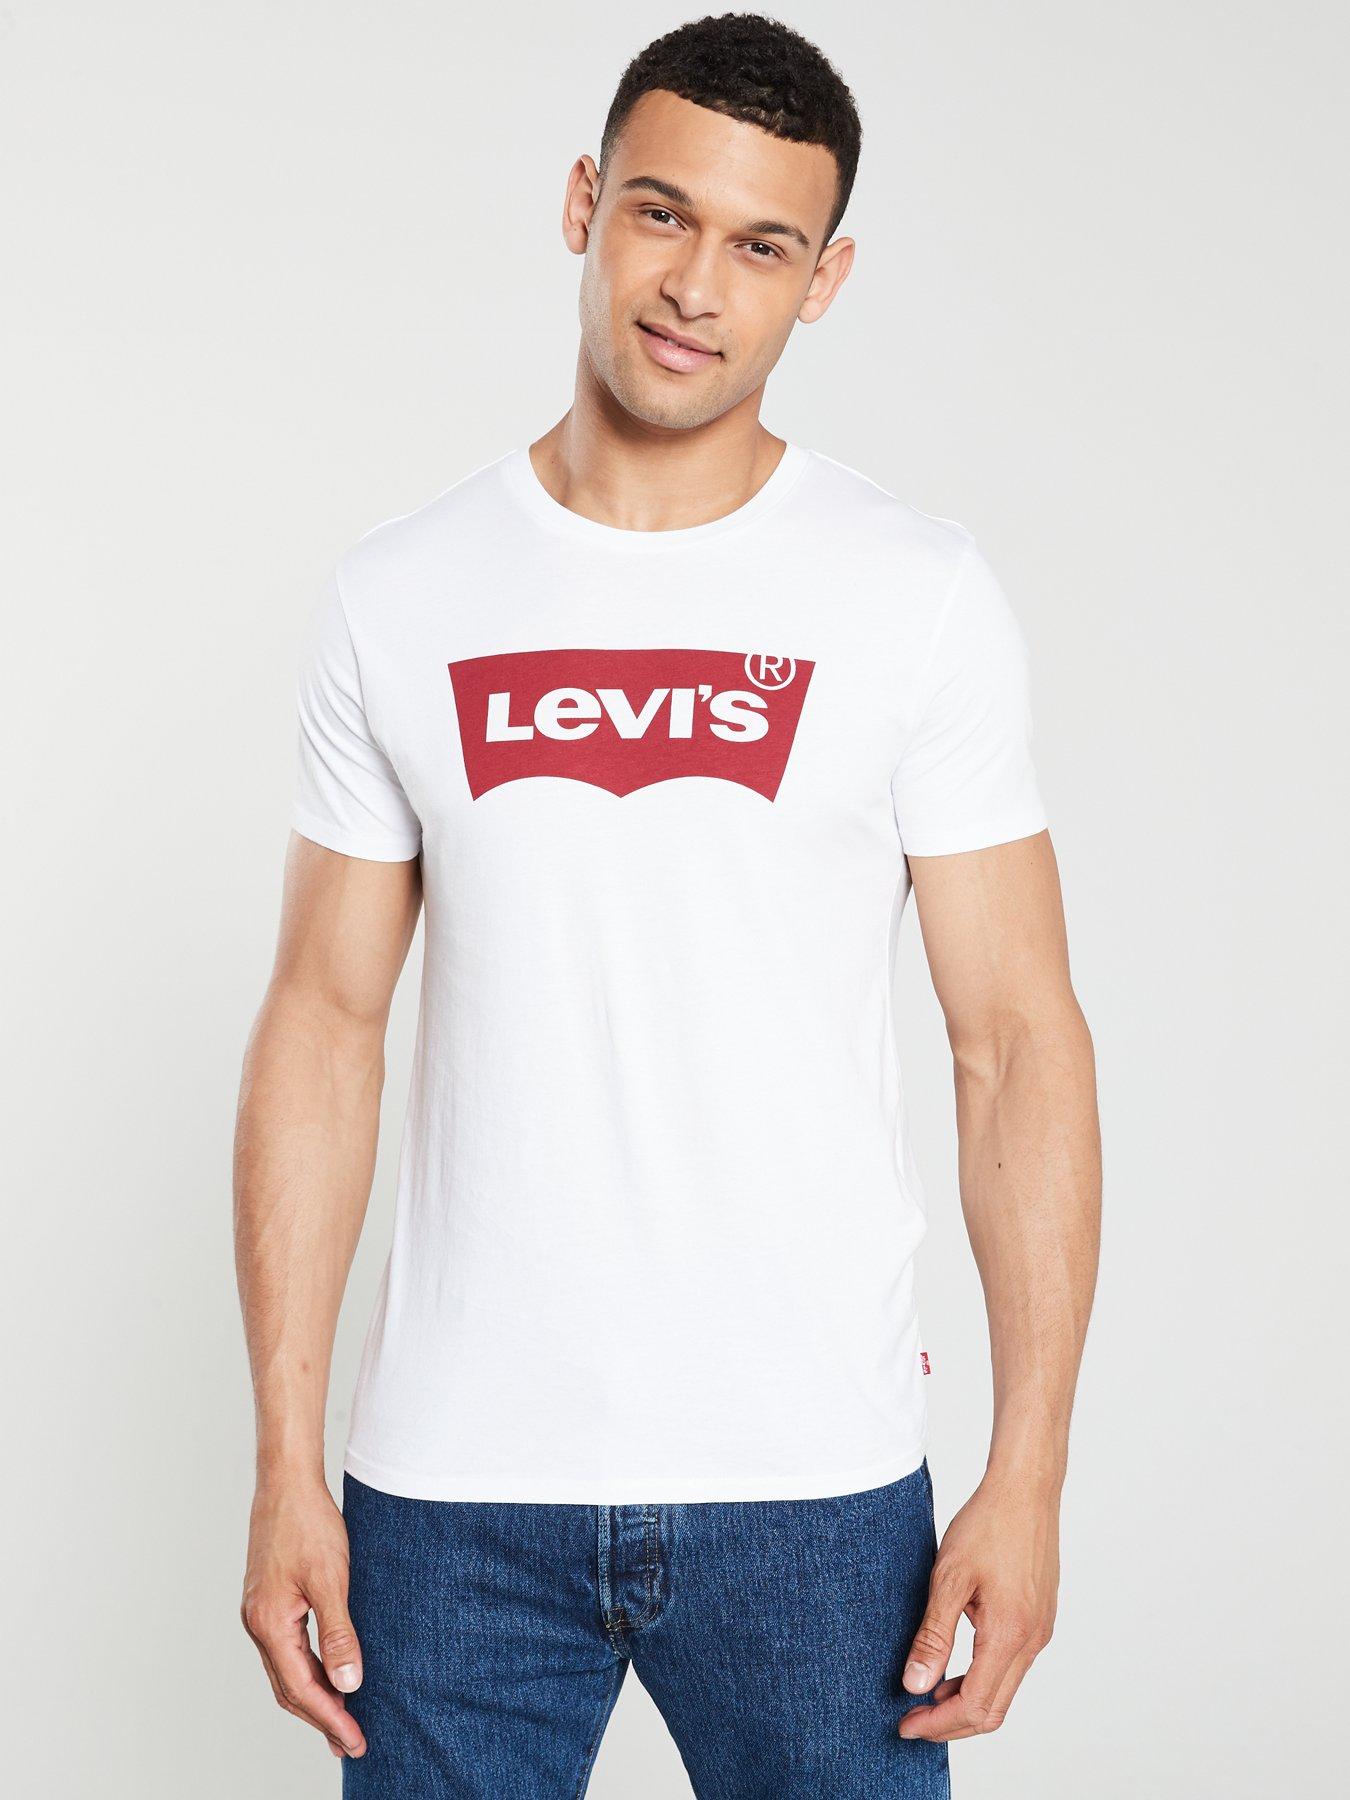 levi's shirt white